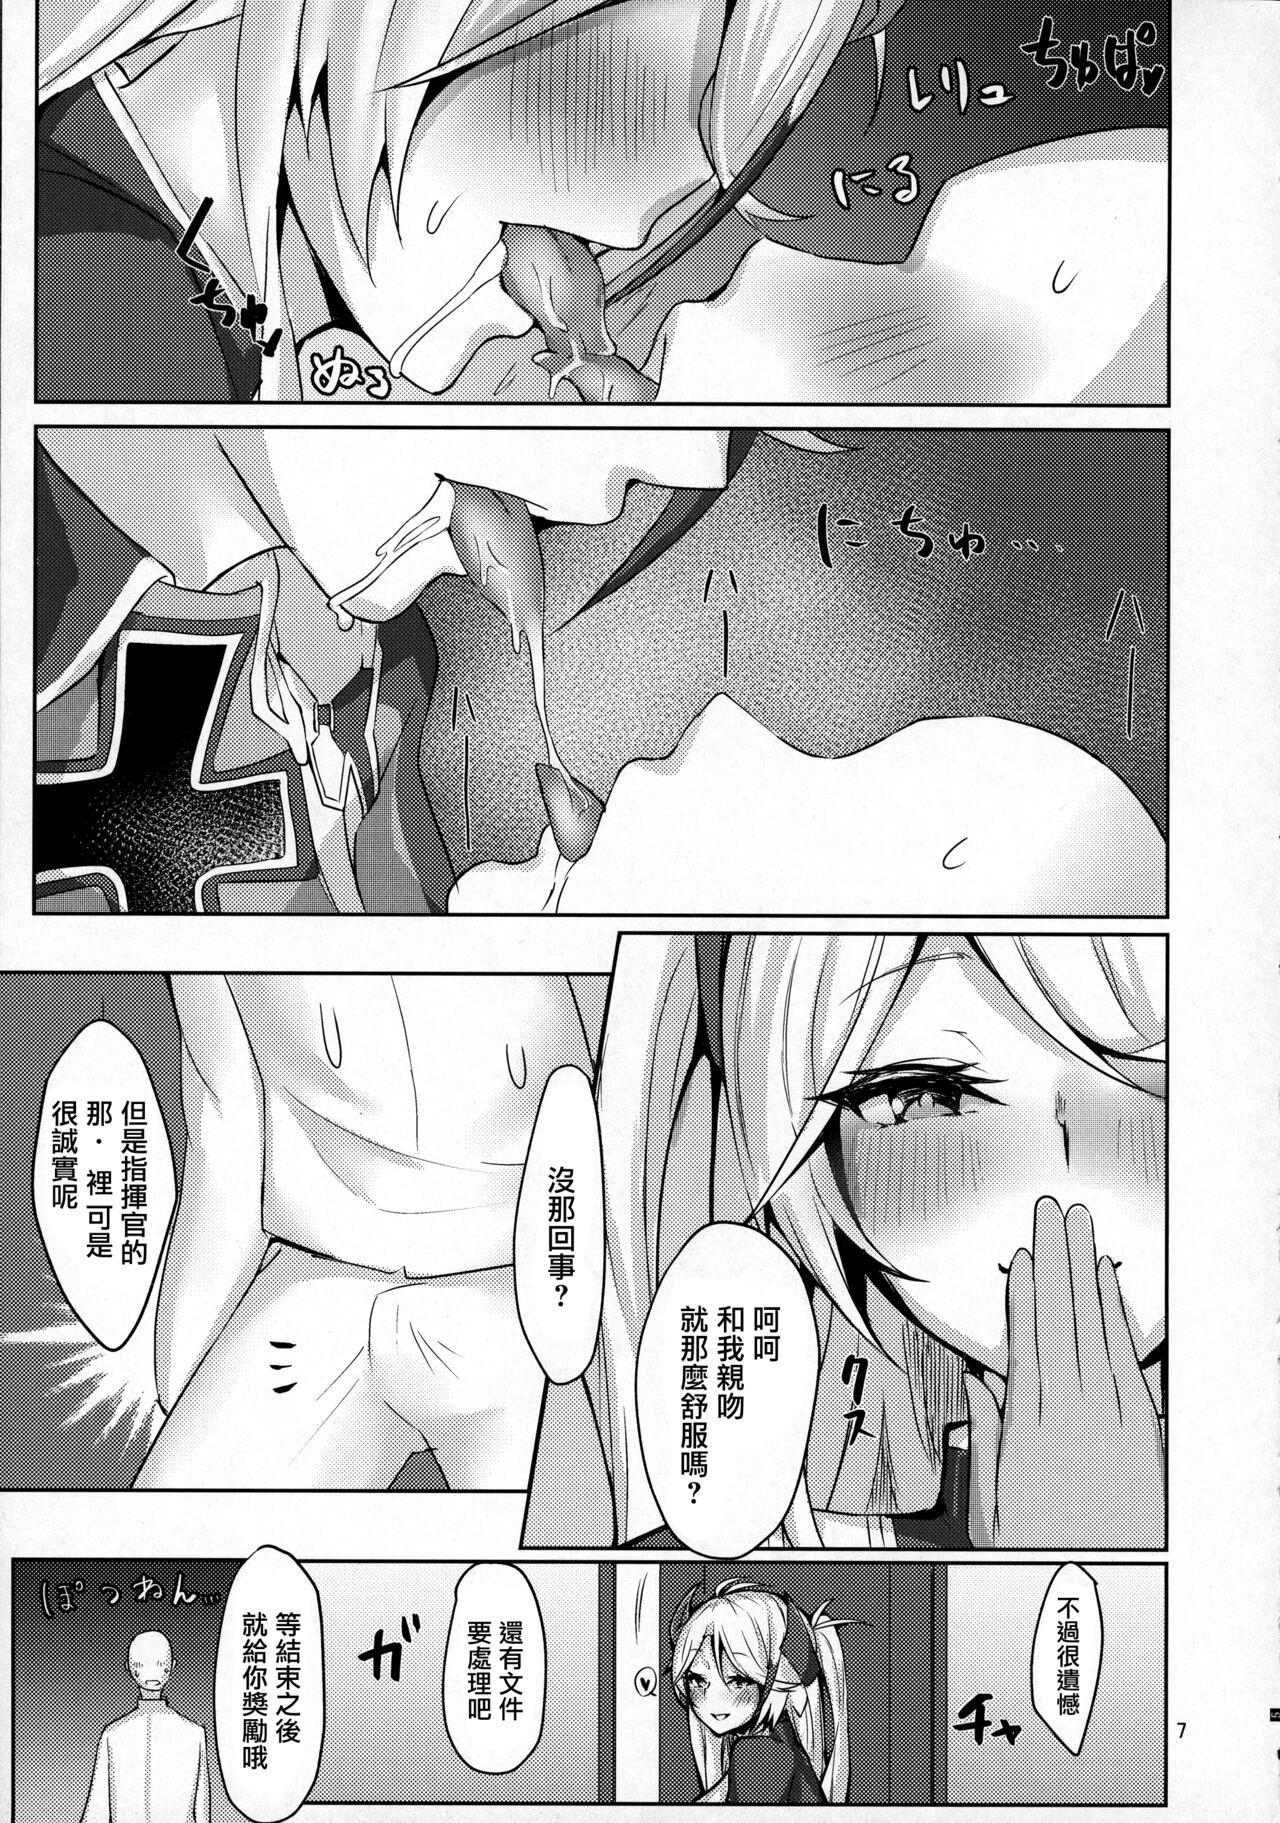 Penis Watashi o Honki ni Saseta no wa Dare na no Kashira? Refine - Azur lane Sexy Sluts - Page 6